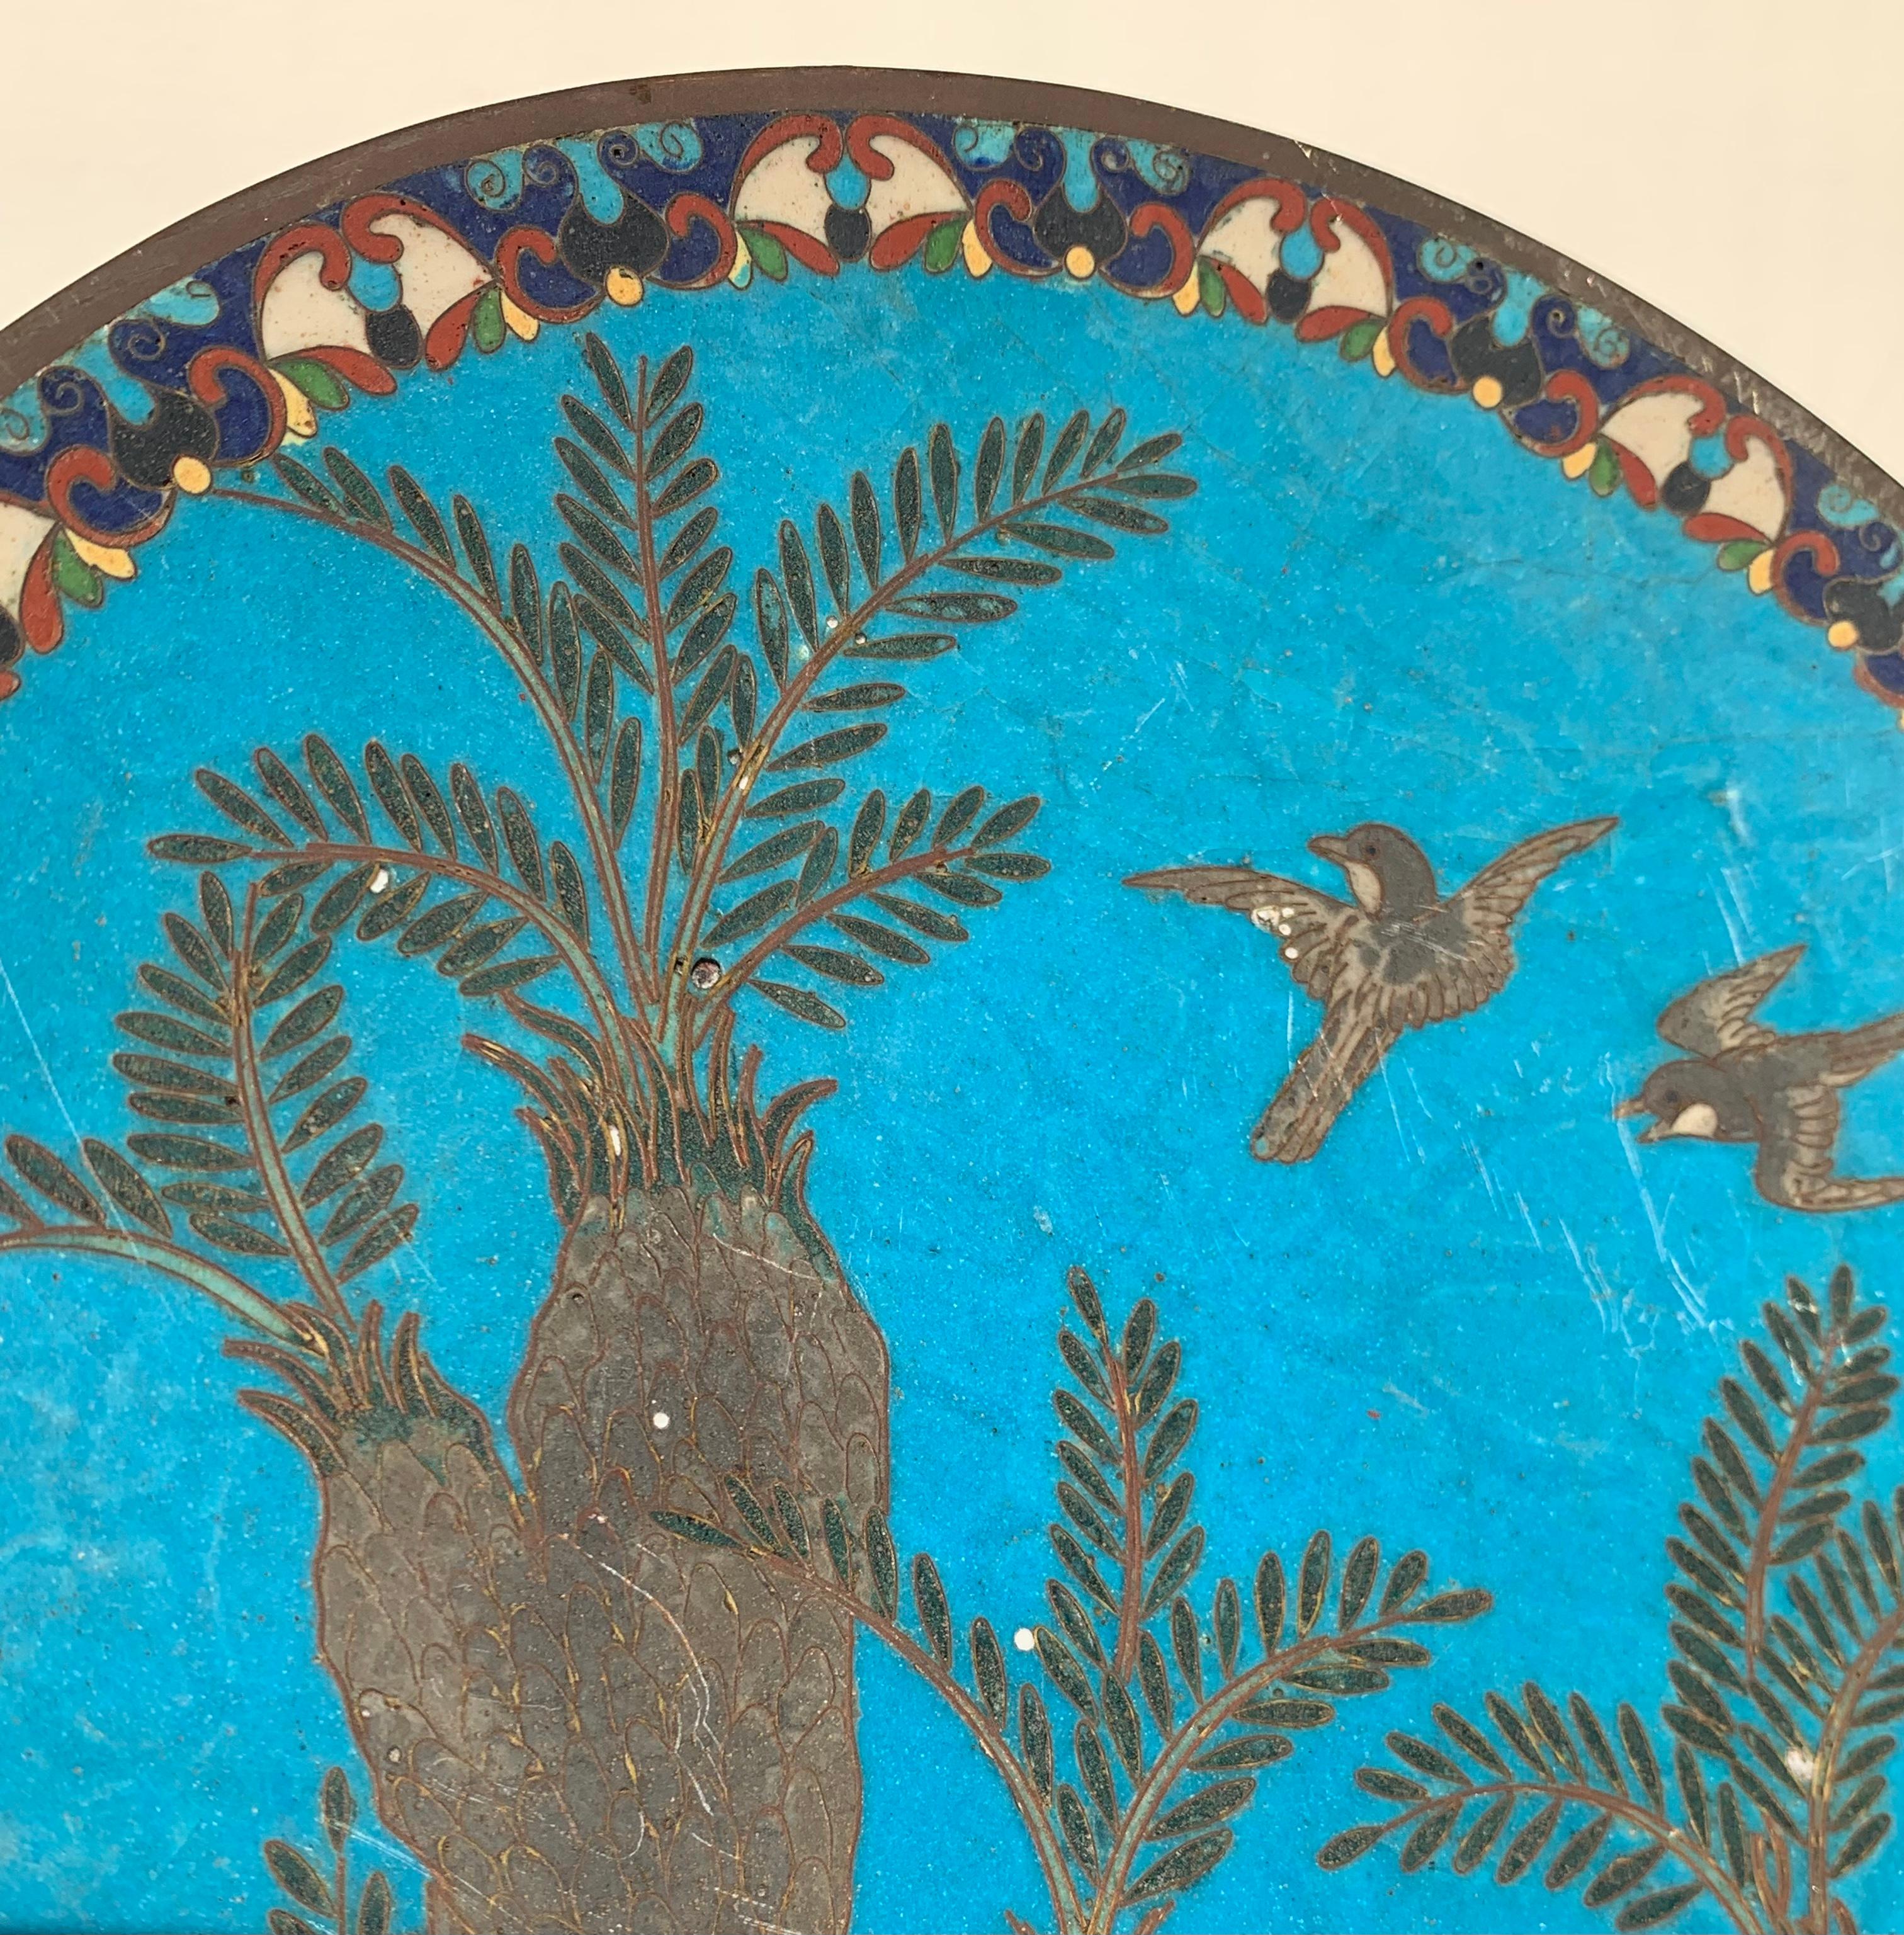 19th Century Antique Arabian Hand-Painted Metal Cloisonné Plate